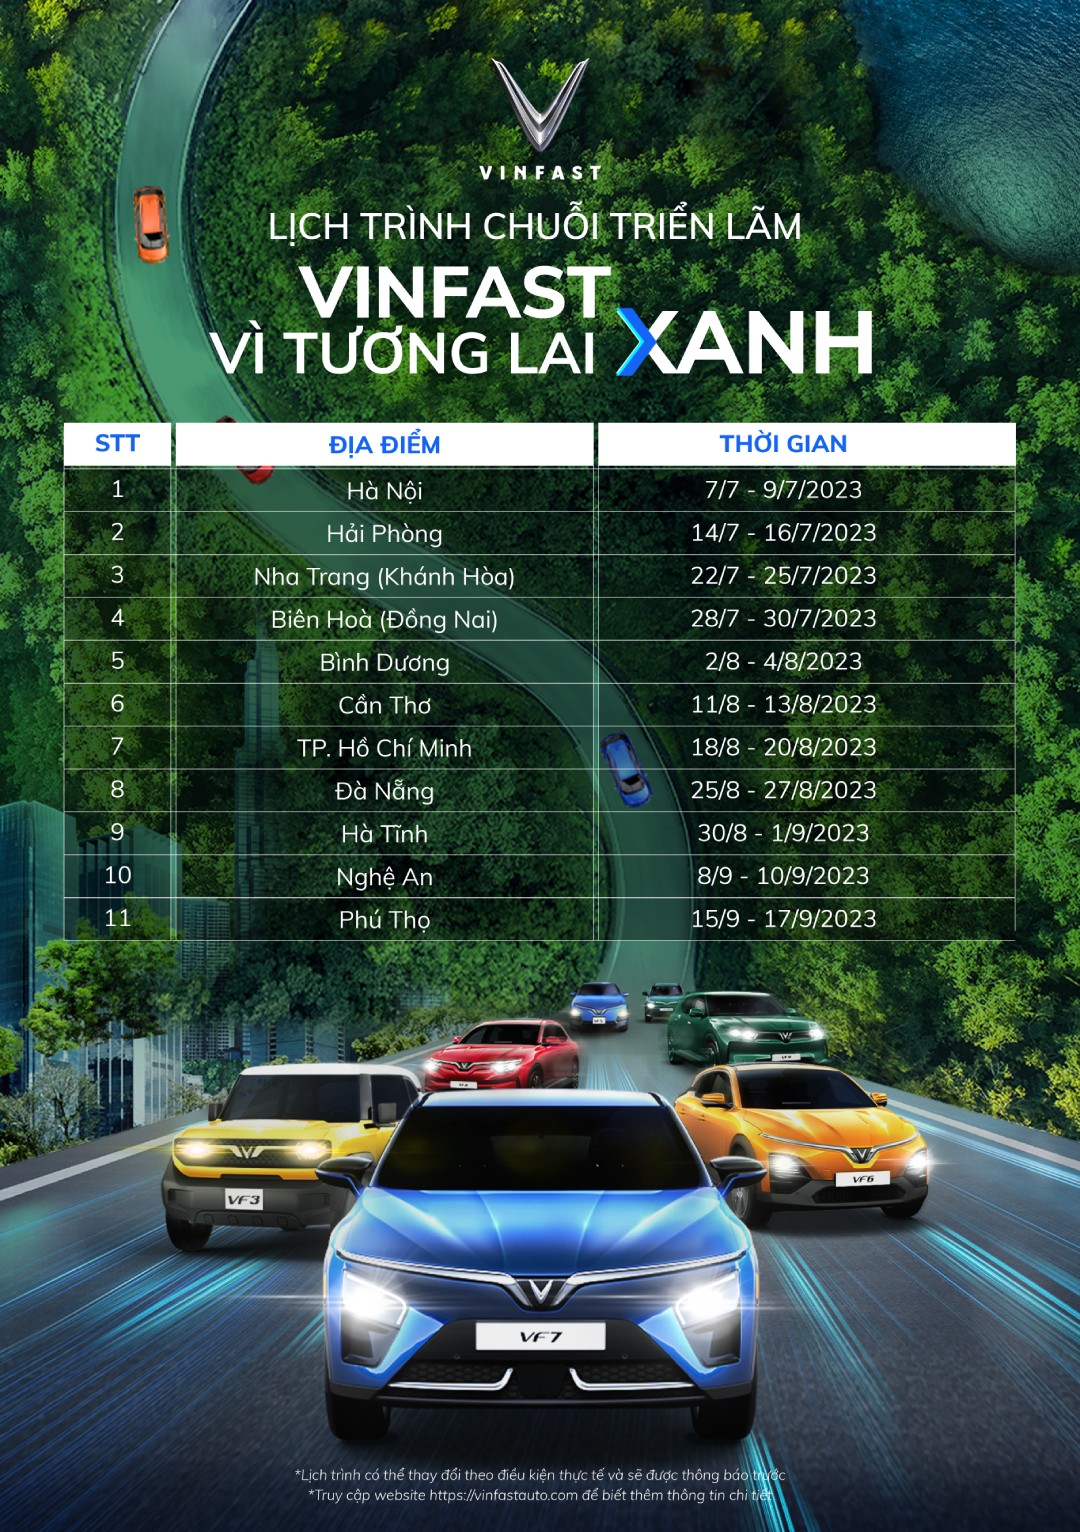 Triển lãm “VinFast - Vì tương lai xanh” tại Hà Nội: ra mắt bộ tứ xe điện VinFast mới - Ảnh 1.